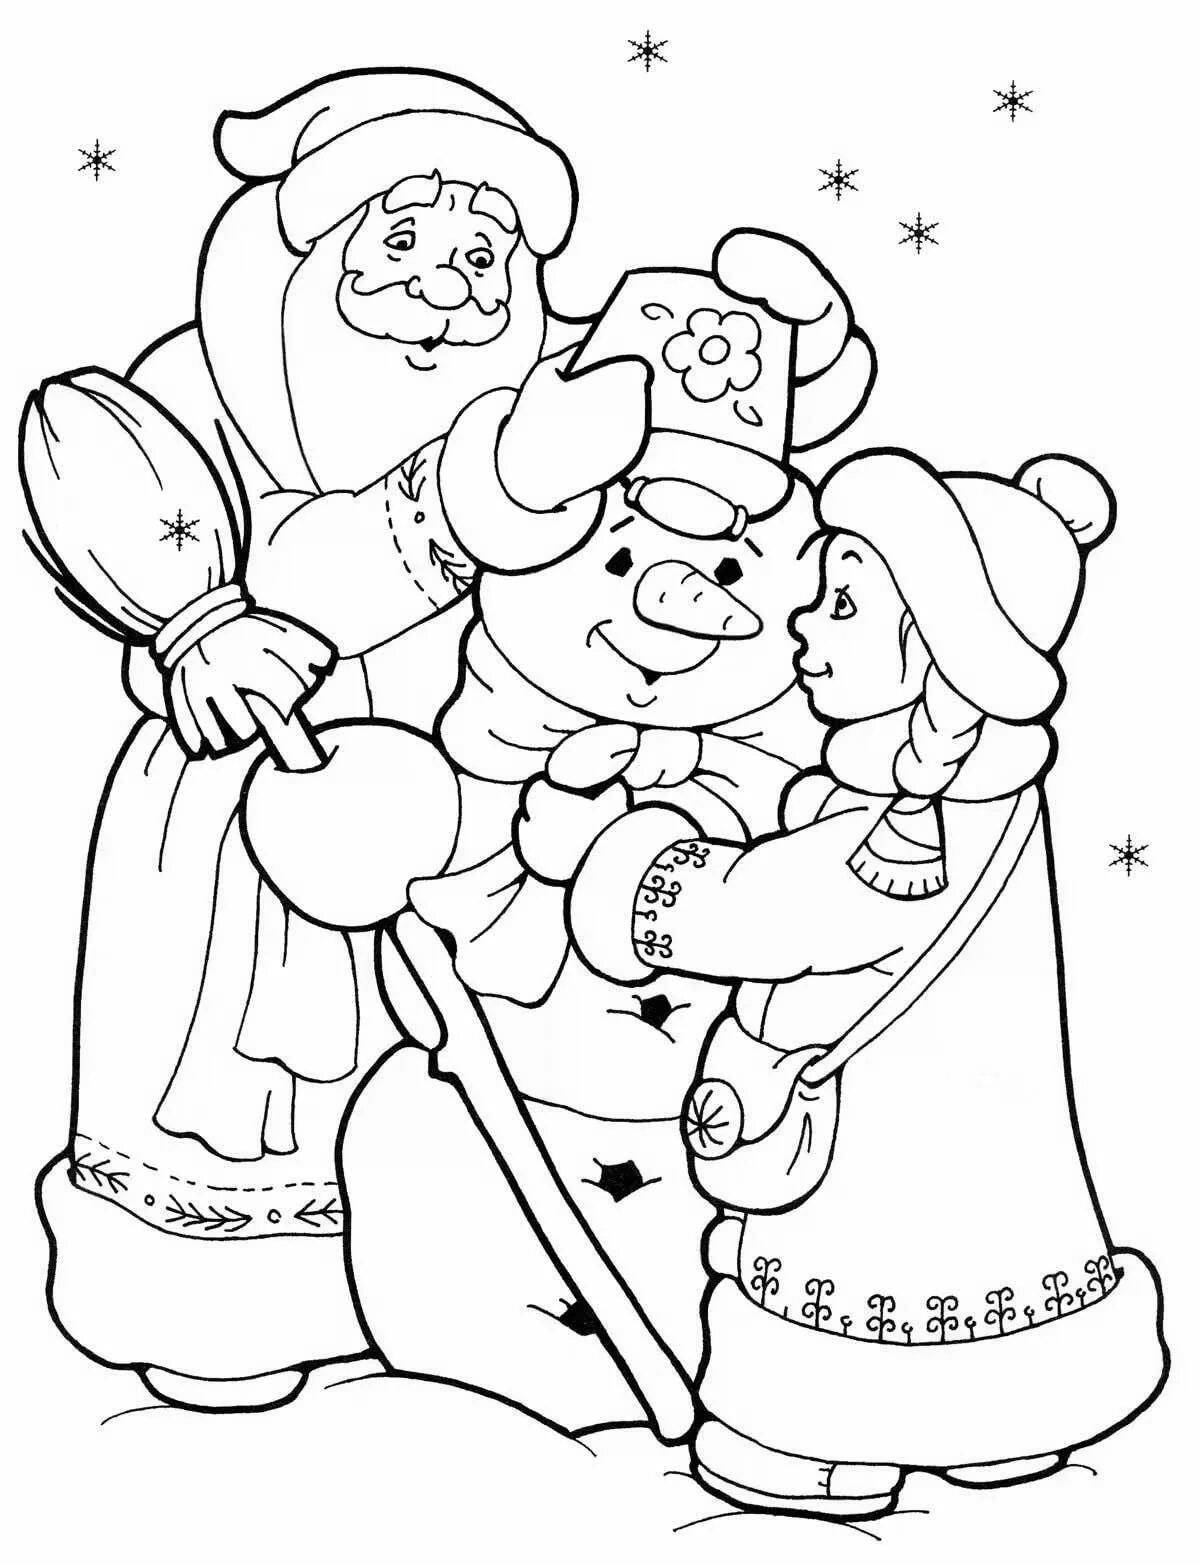 Coloring page sparkling santa claus